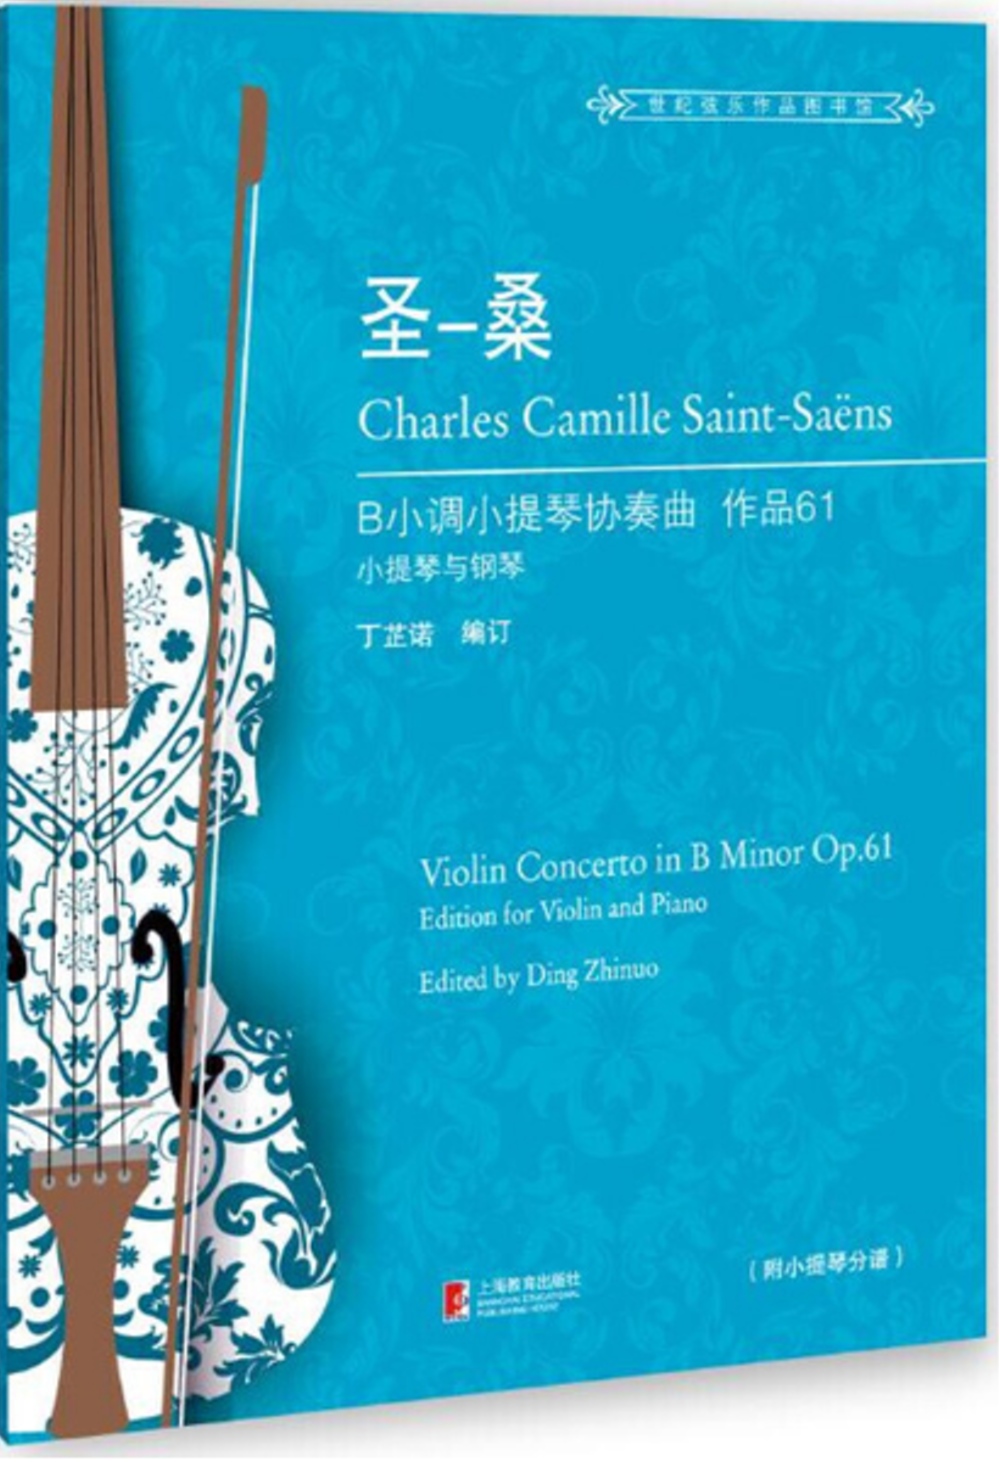 聖-桑B小調小提琴協奏曲：作品.61(小提琴與鋼琴)=Violin concerto in B minor Op.61：edition for violin and piano